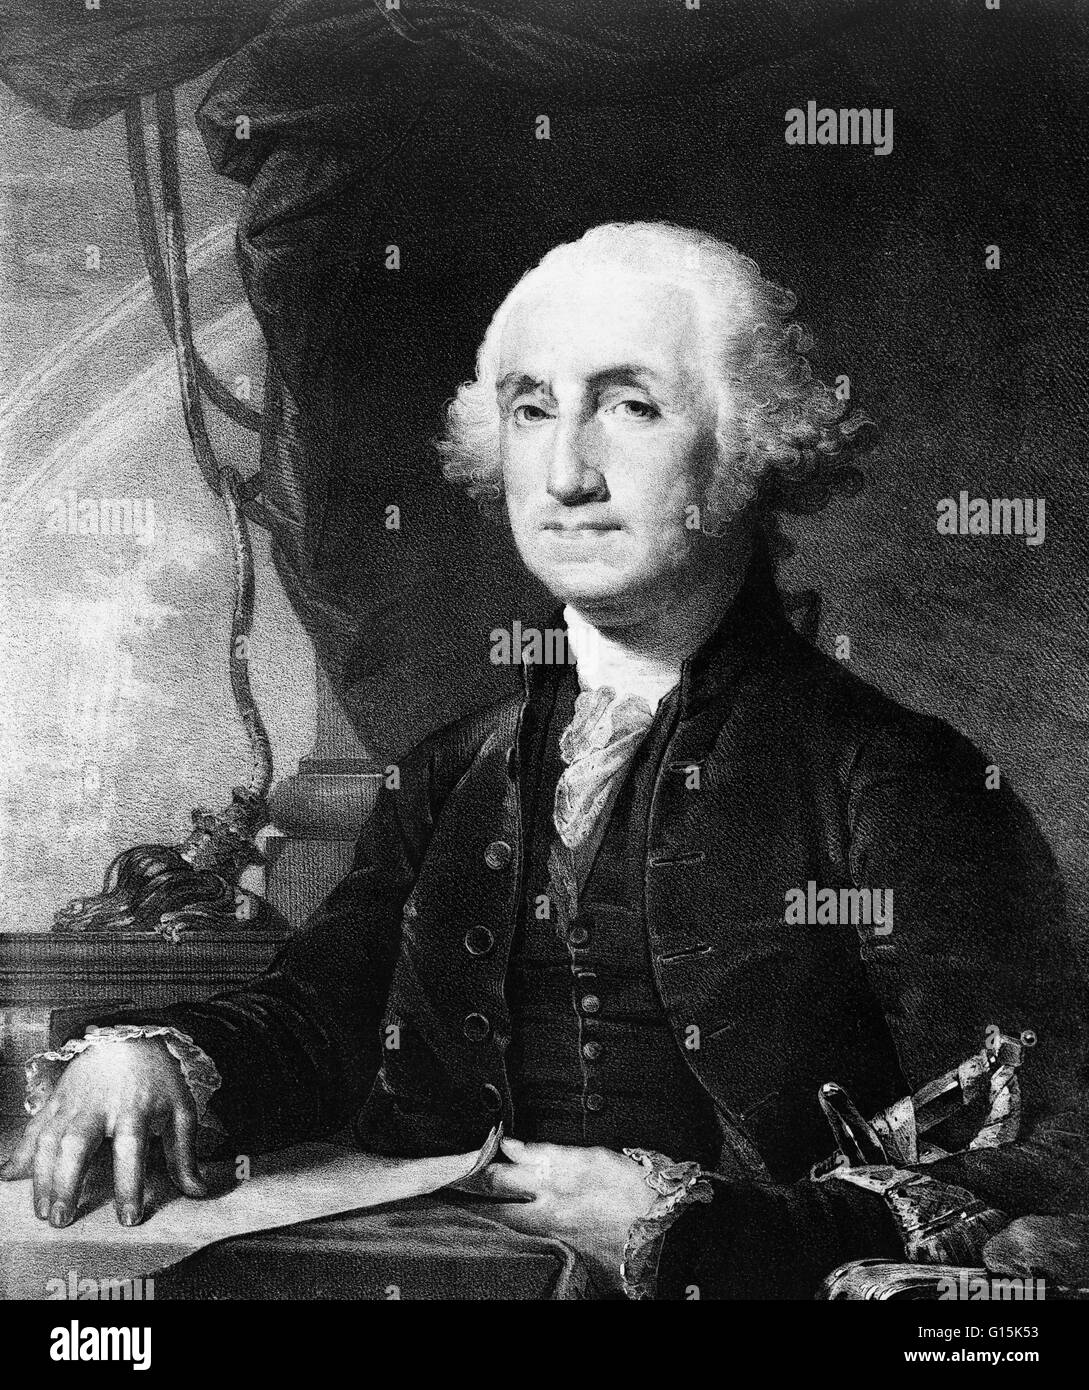 George Washington (22. Februar 1732 - 14. Dezember 1799) war der erste Präsident der Vereinigten Staaten von Amerika, darunter von 1789 bis 1797 und dominierenden militärischen und politischen Führer der USA von 1775 bis 1799. Er führte die amerikanische Sieg ov Stockfoto